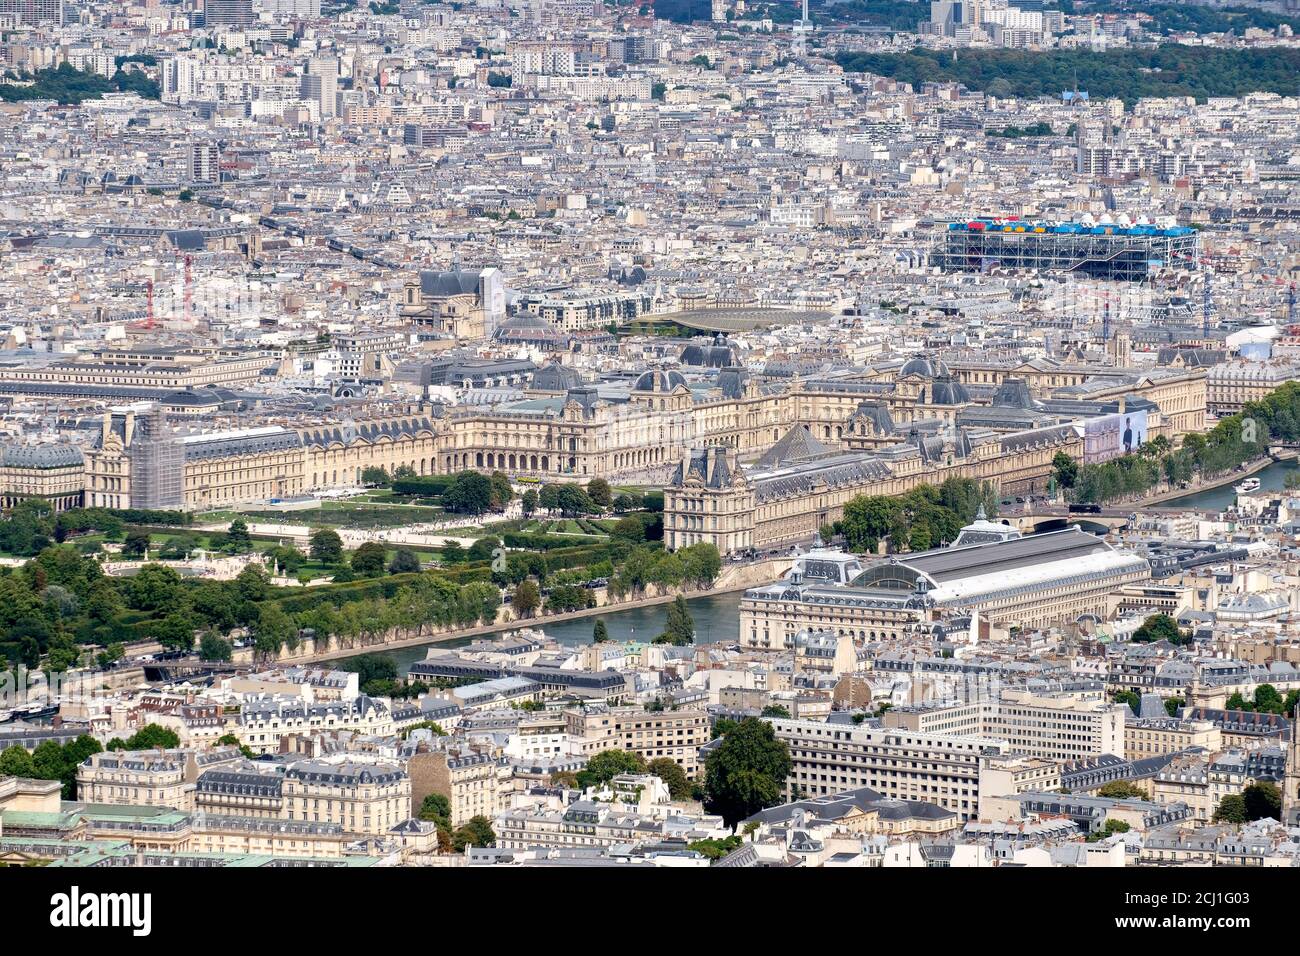 Vue aérienne de Paris avec le Louvre, le musée George Pompidou et le musée d'Orsay Banque D'Images